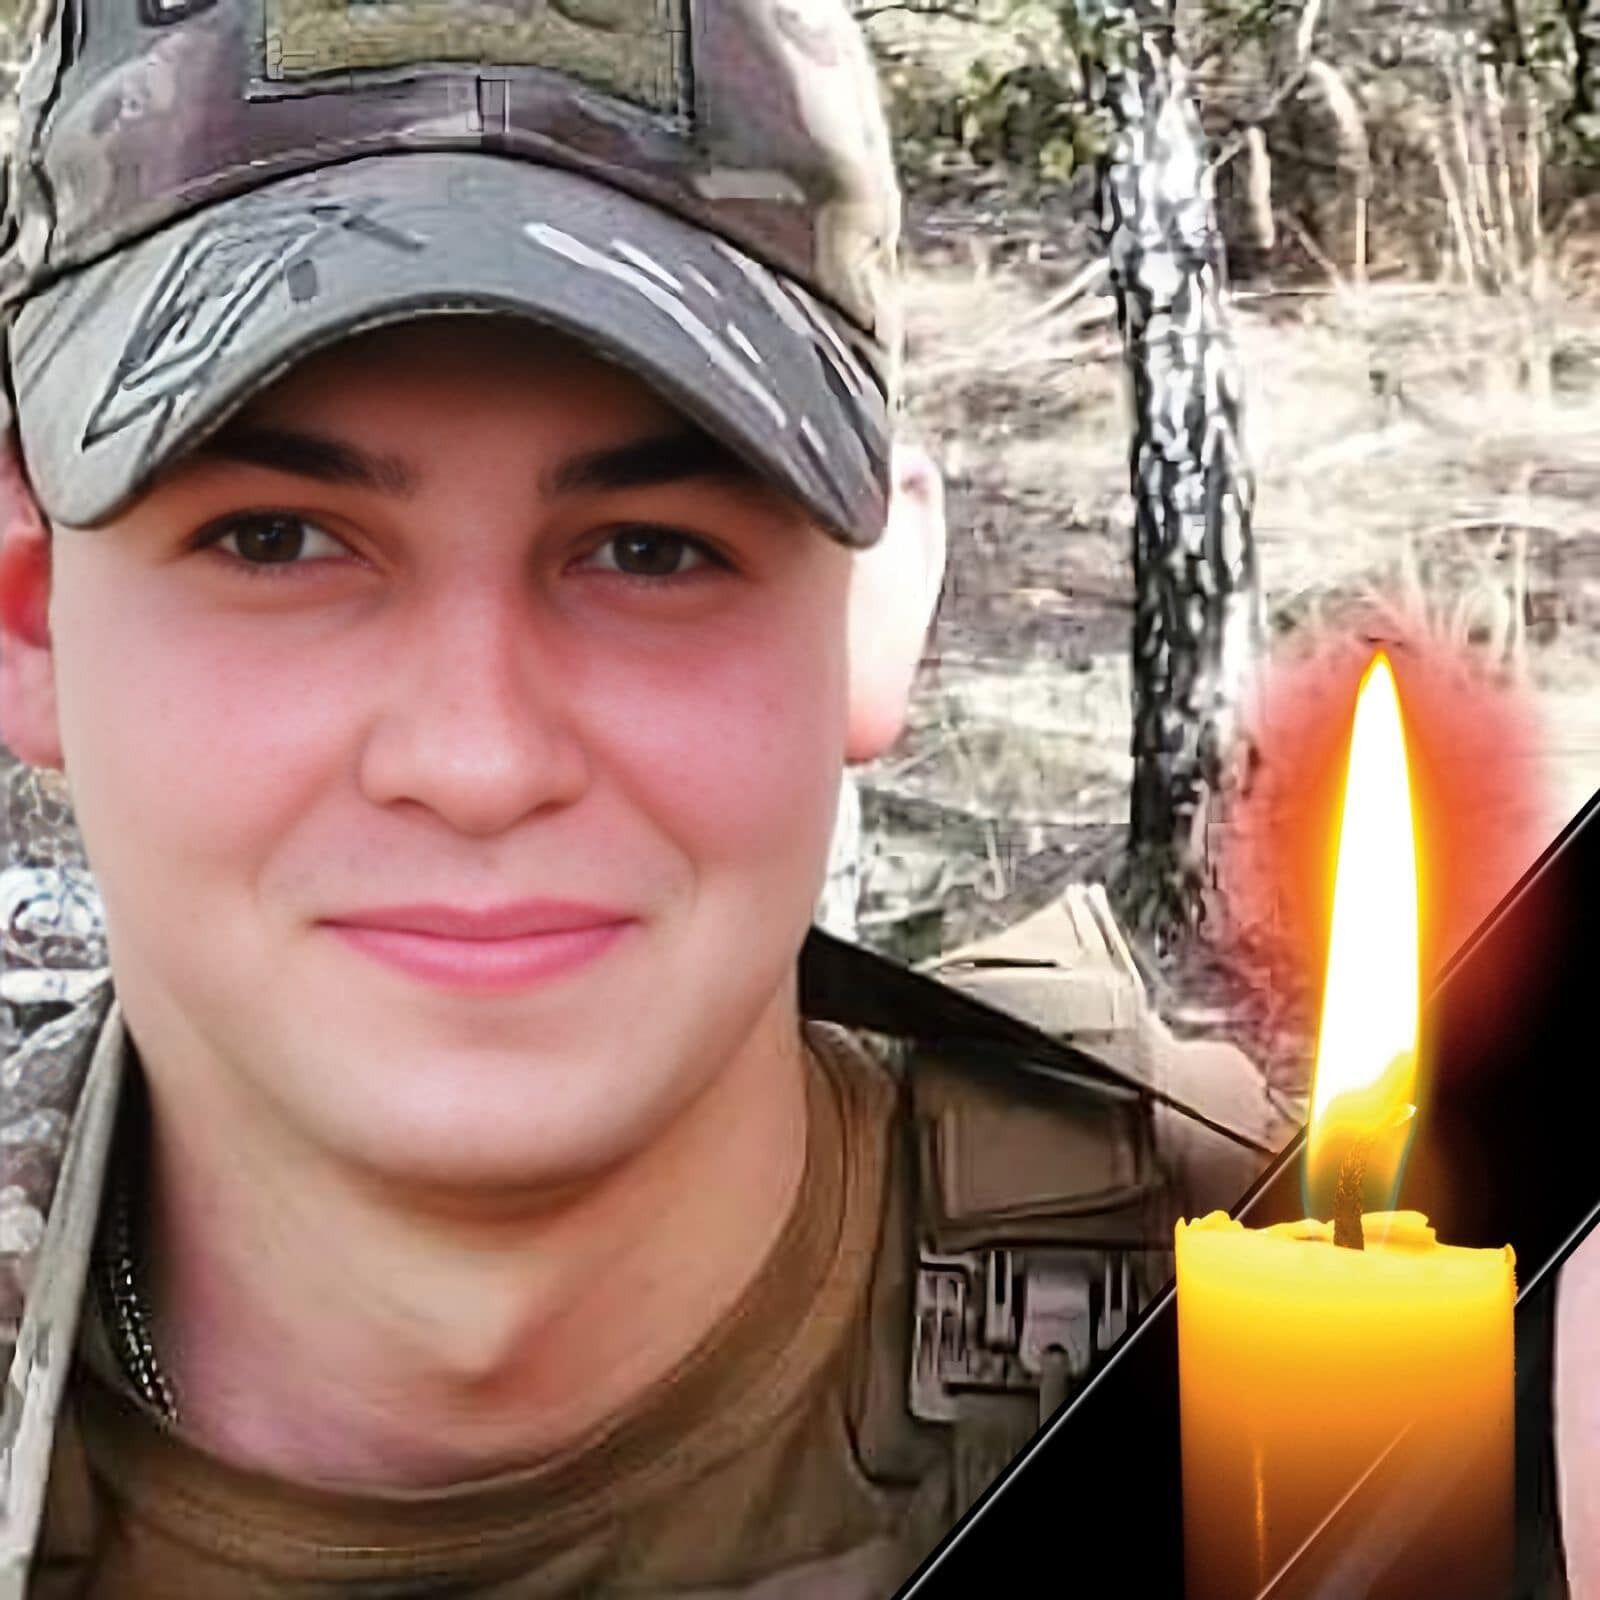 "Біль розриває серце": на фронті загинув 20-річний воїн, батько якого теж захищає Україну. Фото